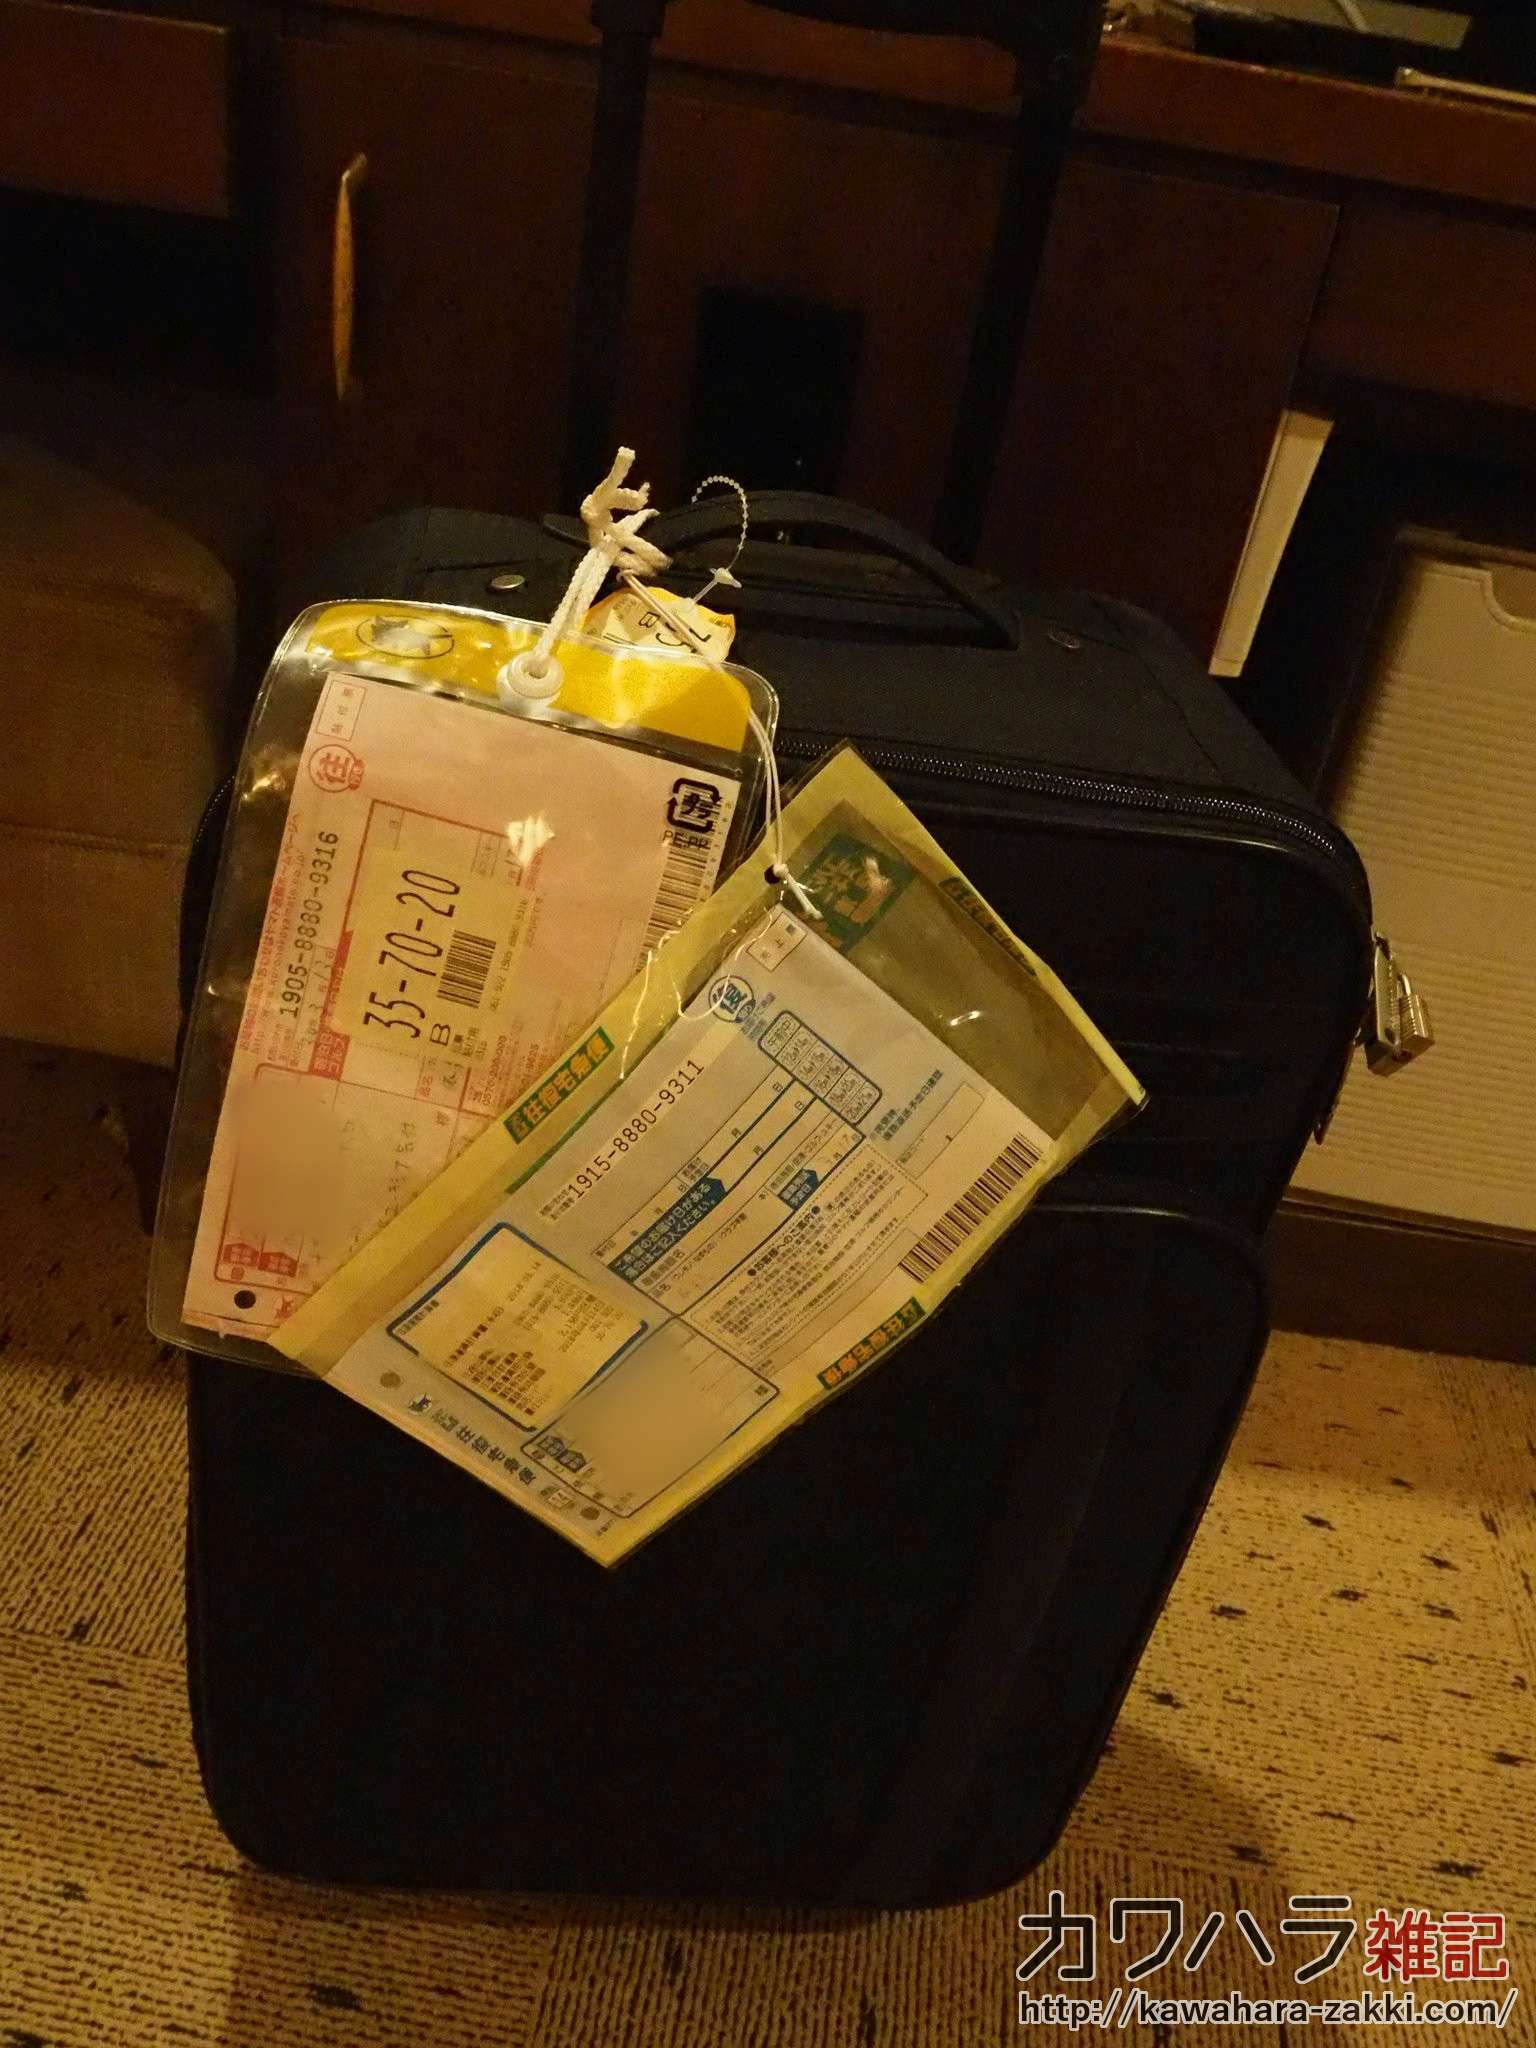 スーツケースをホテルへ往復宅急便で送ると便利だった 新幹線で荷物が邪魔 カワハラ雑記